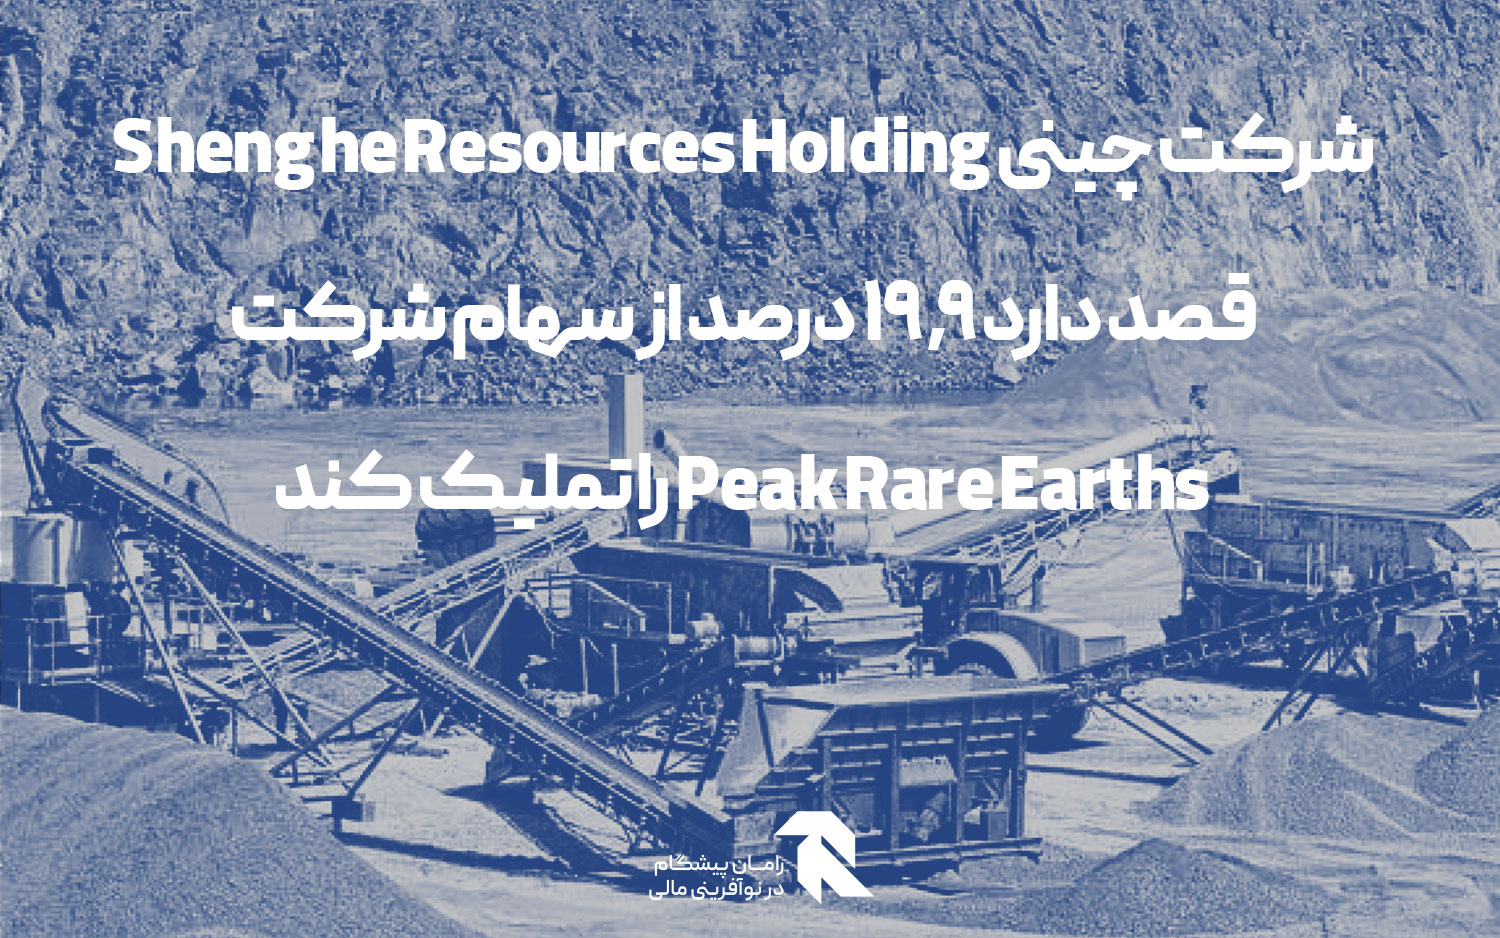 شرکت چینی Shenghe Resources Holding قصد دارد 19.9 درصد از سهام شرکت Peak Rare Earths را تملیک کند